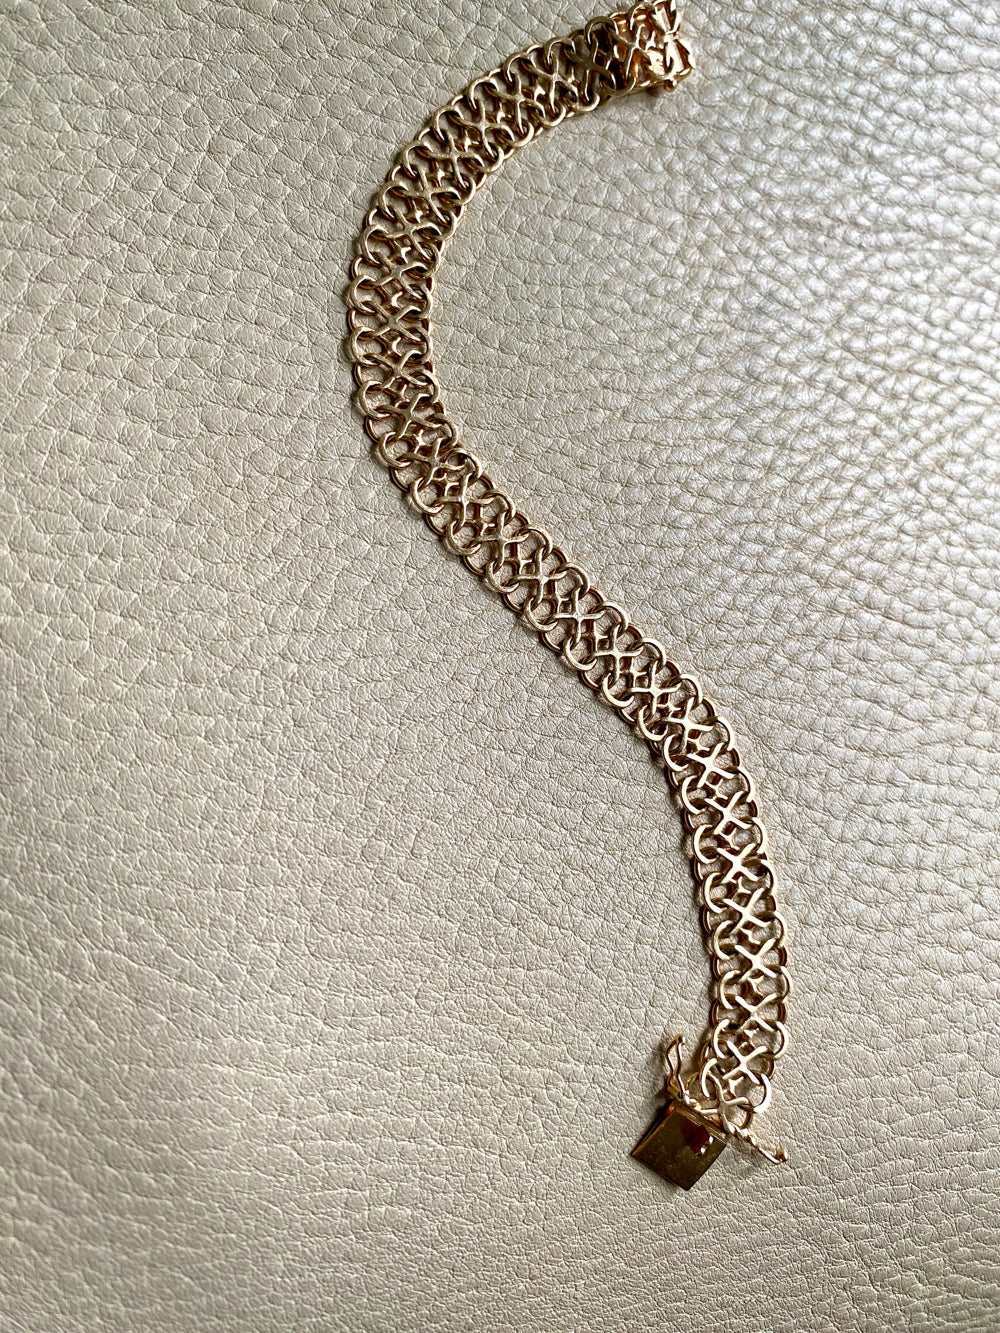 Unique! Figure 8 link bracelet in 18k gold - Swedish vintage 1977 - 7.9 inch length